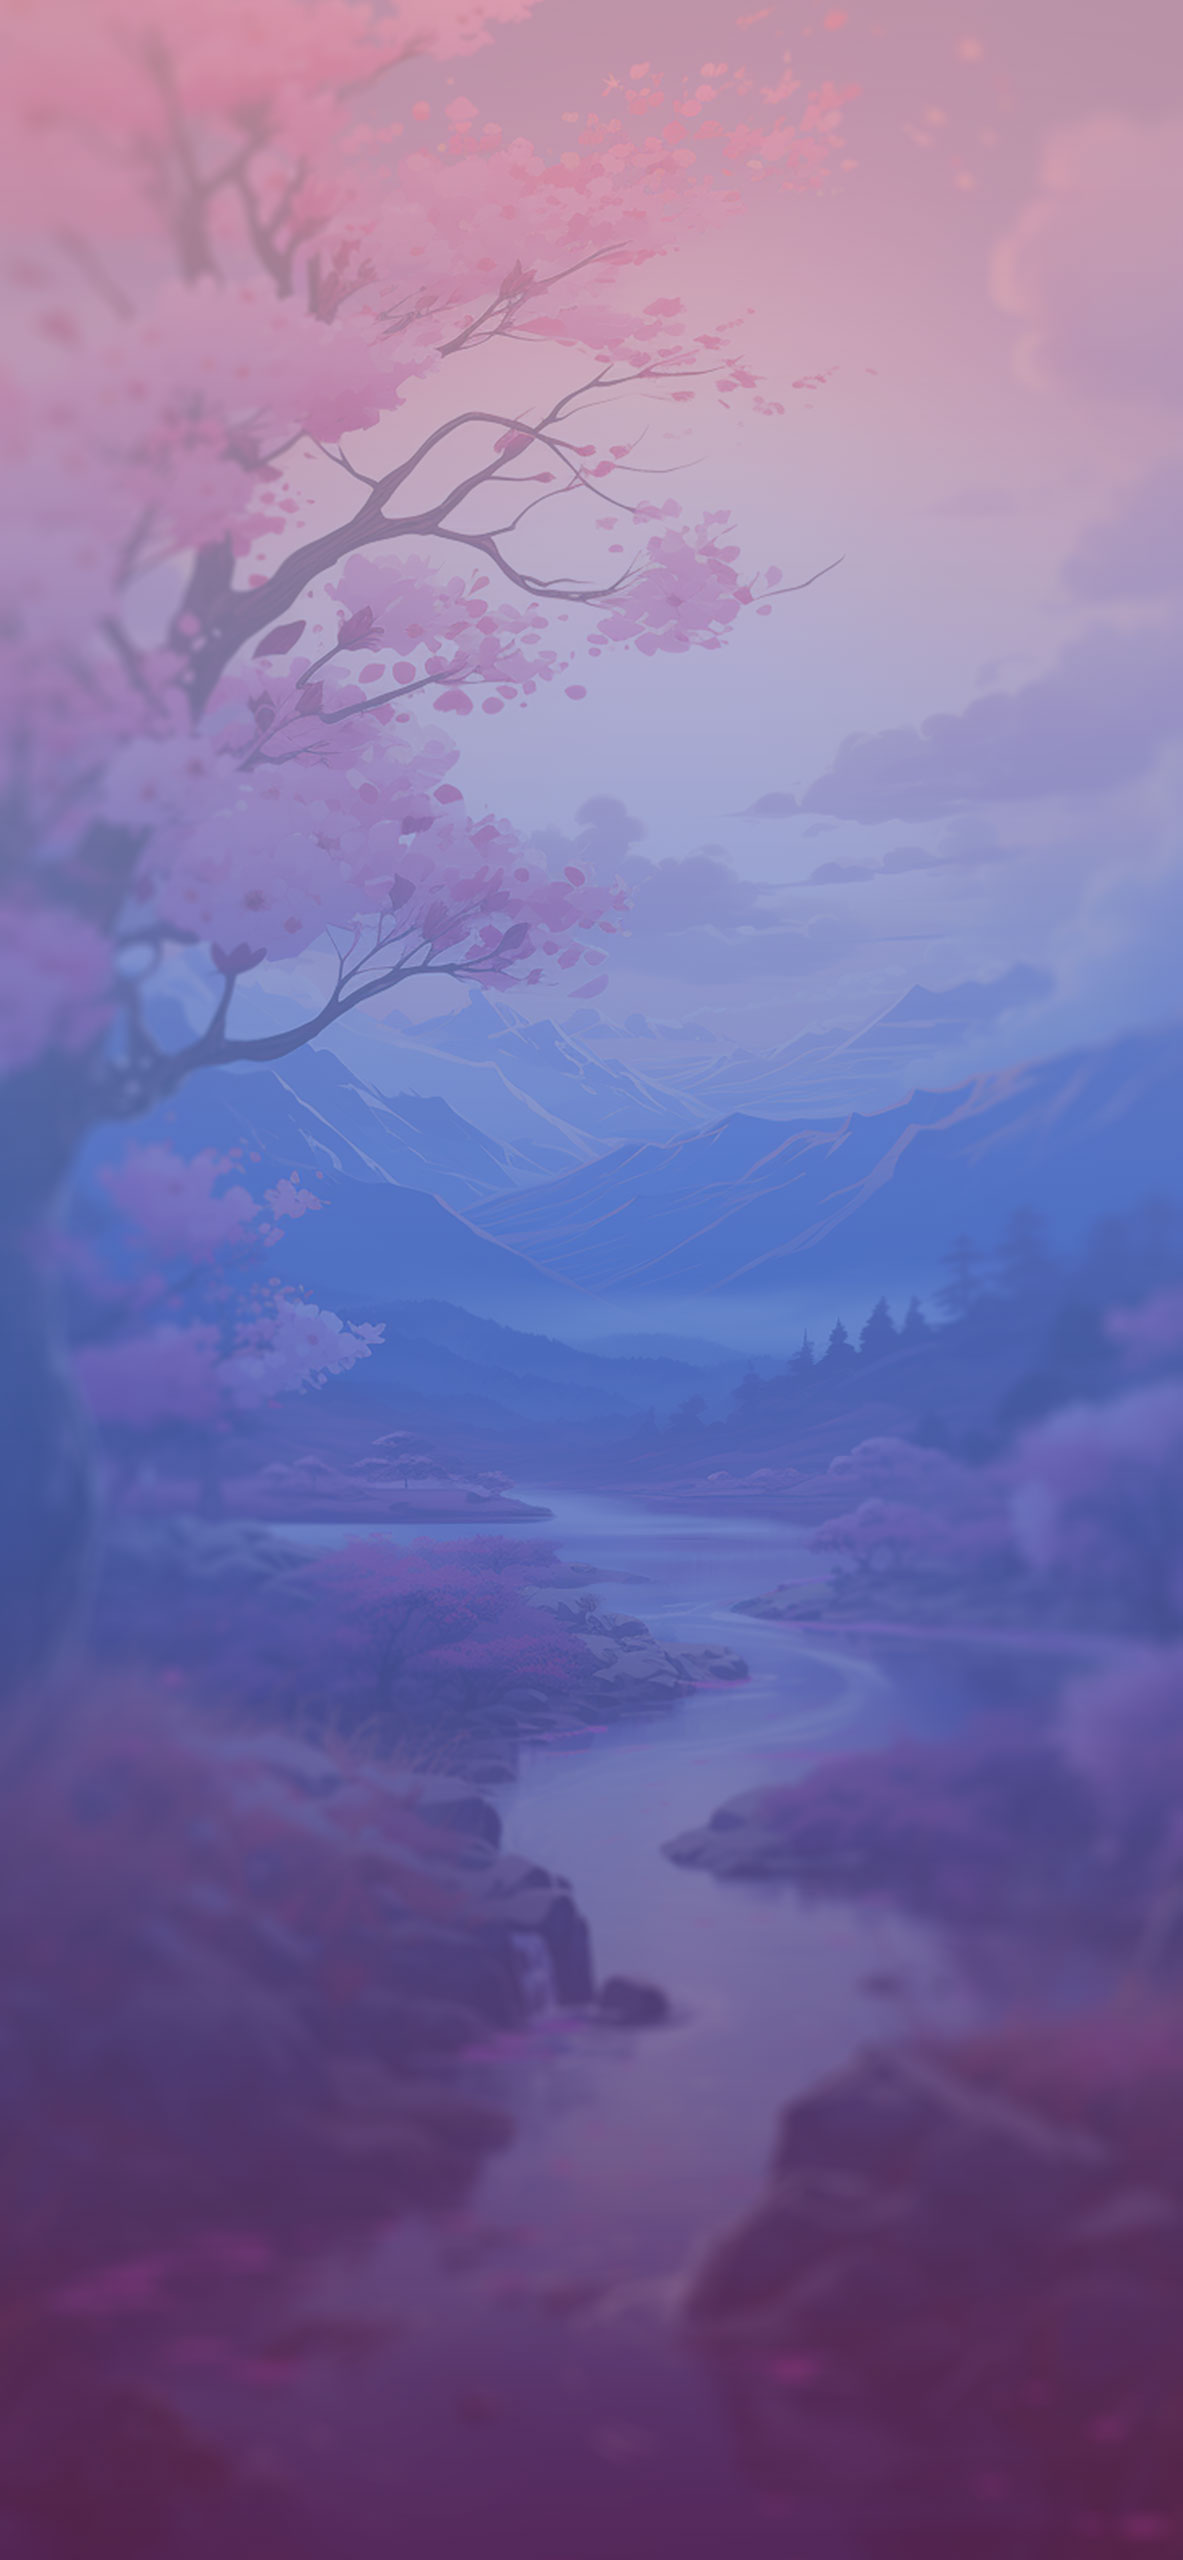 Landscape Mountains & River Anime Wallpaper Landscape Wallpape